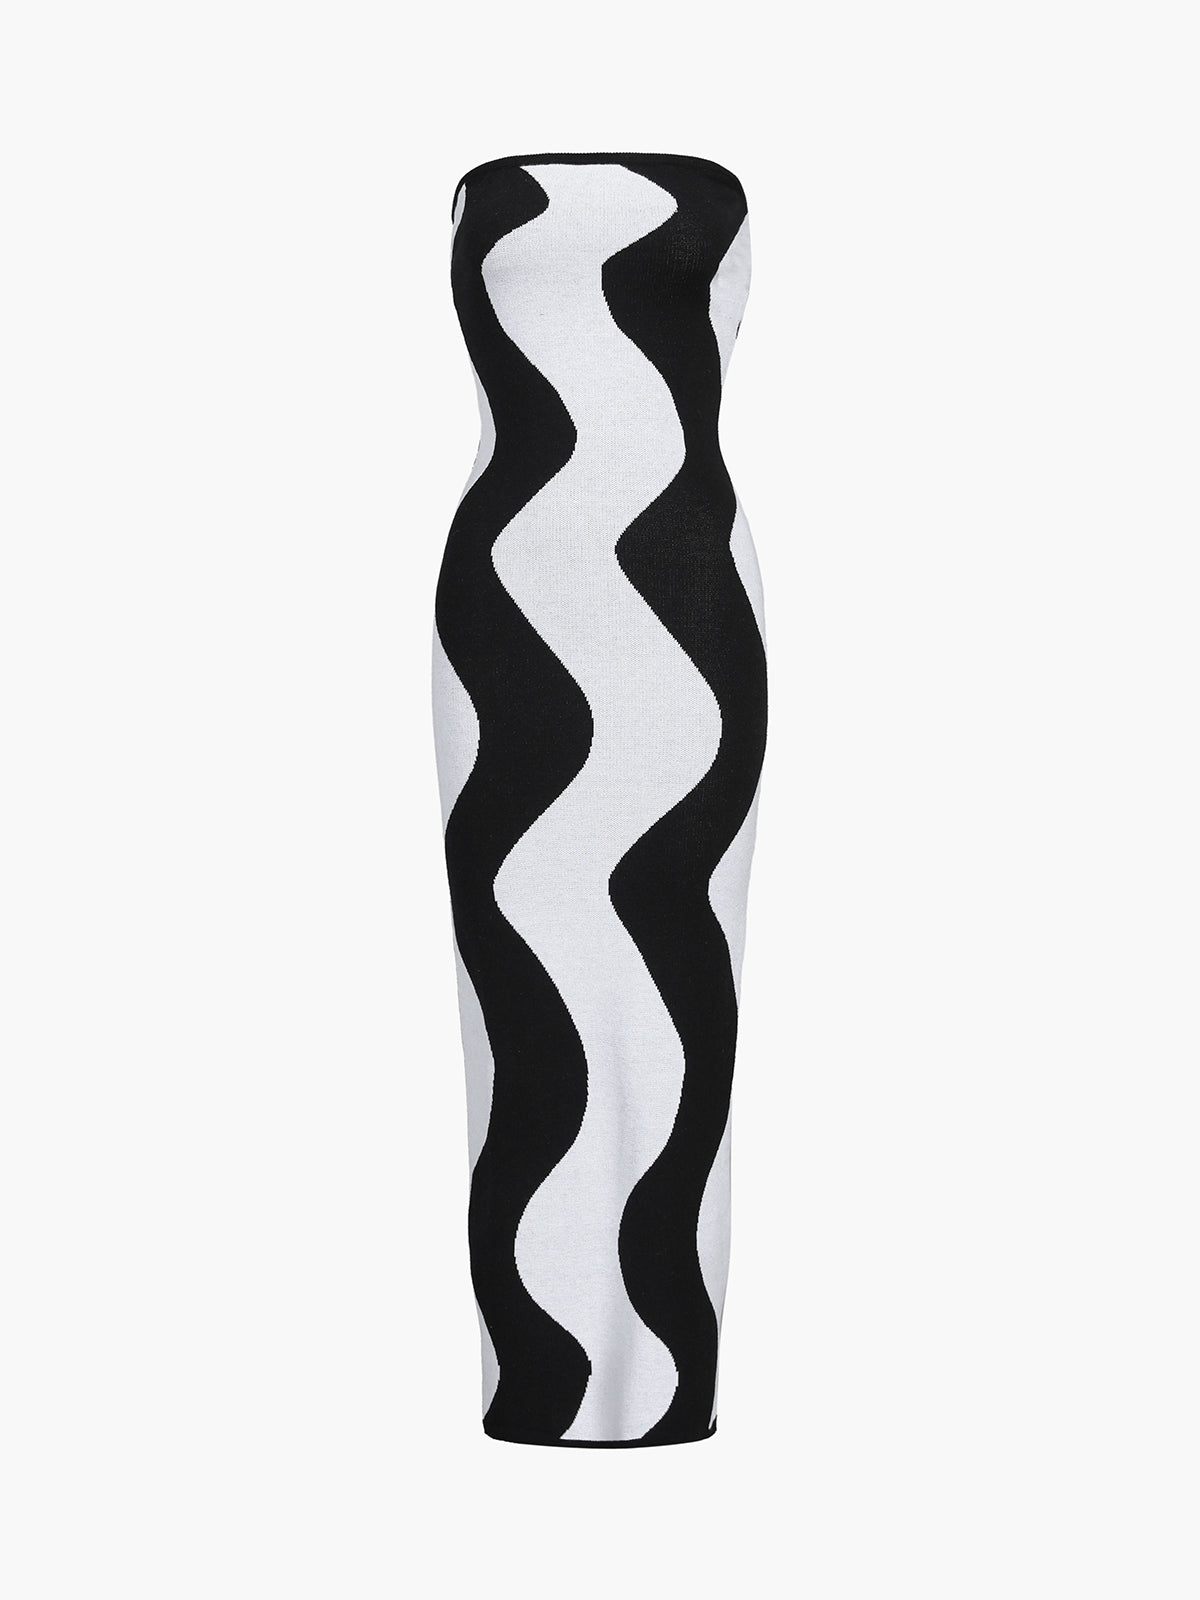 Wavy Stripe Tube Long Sweater Dress